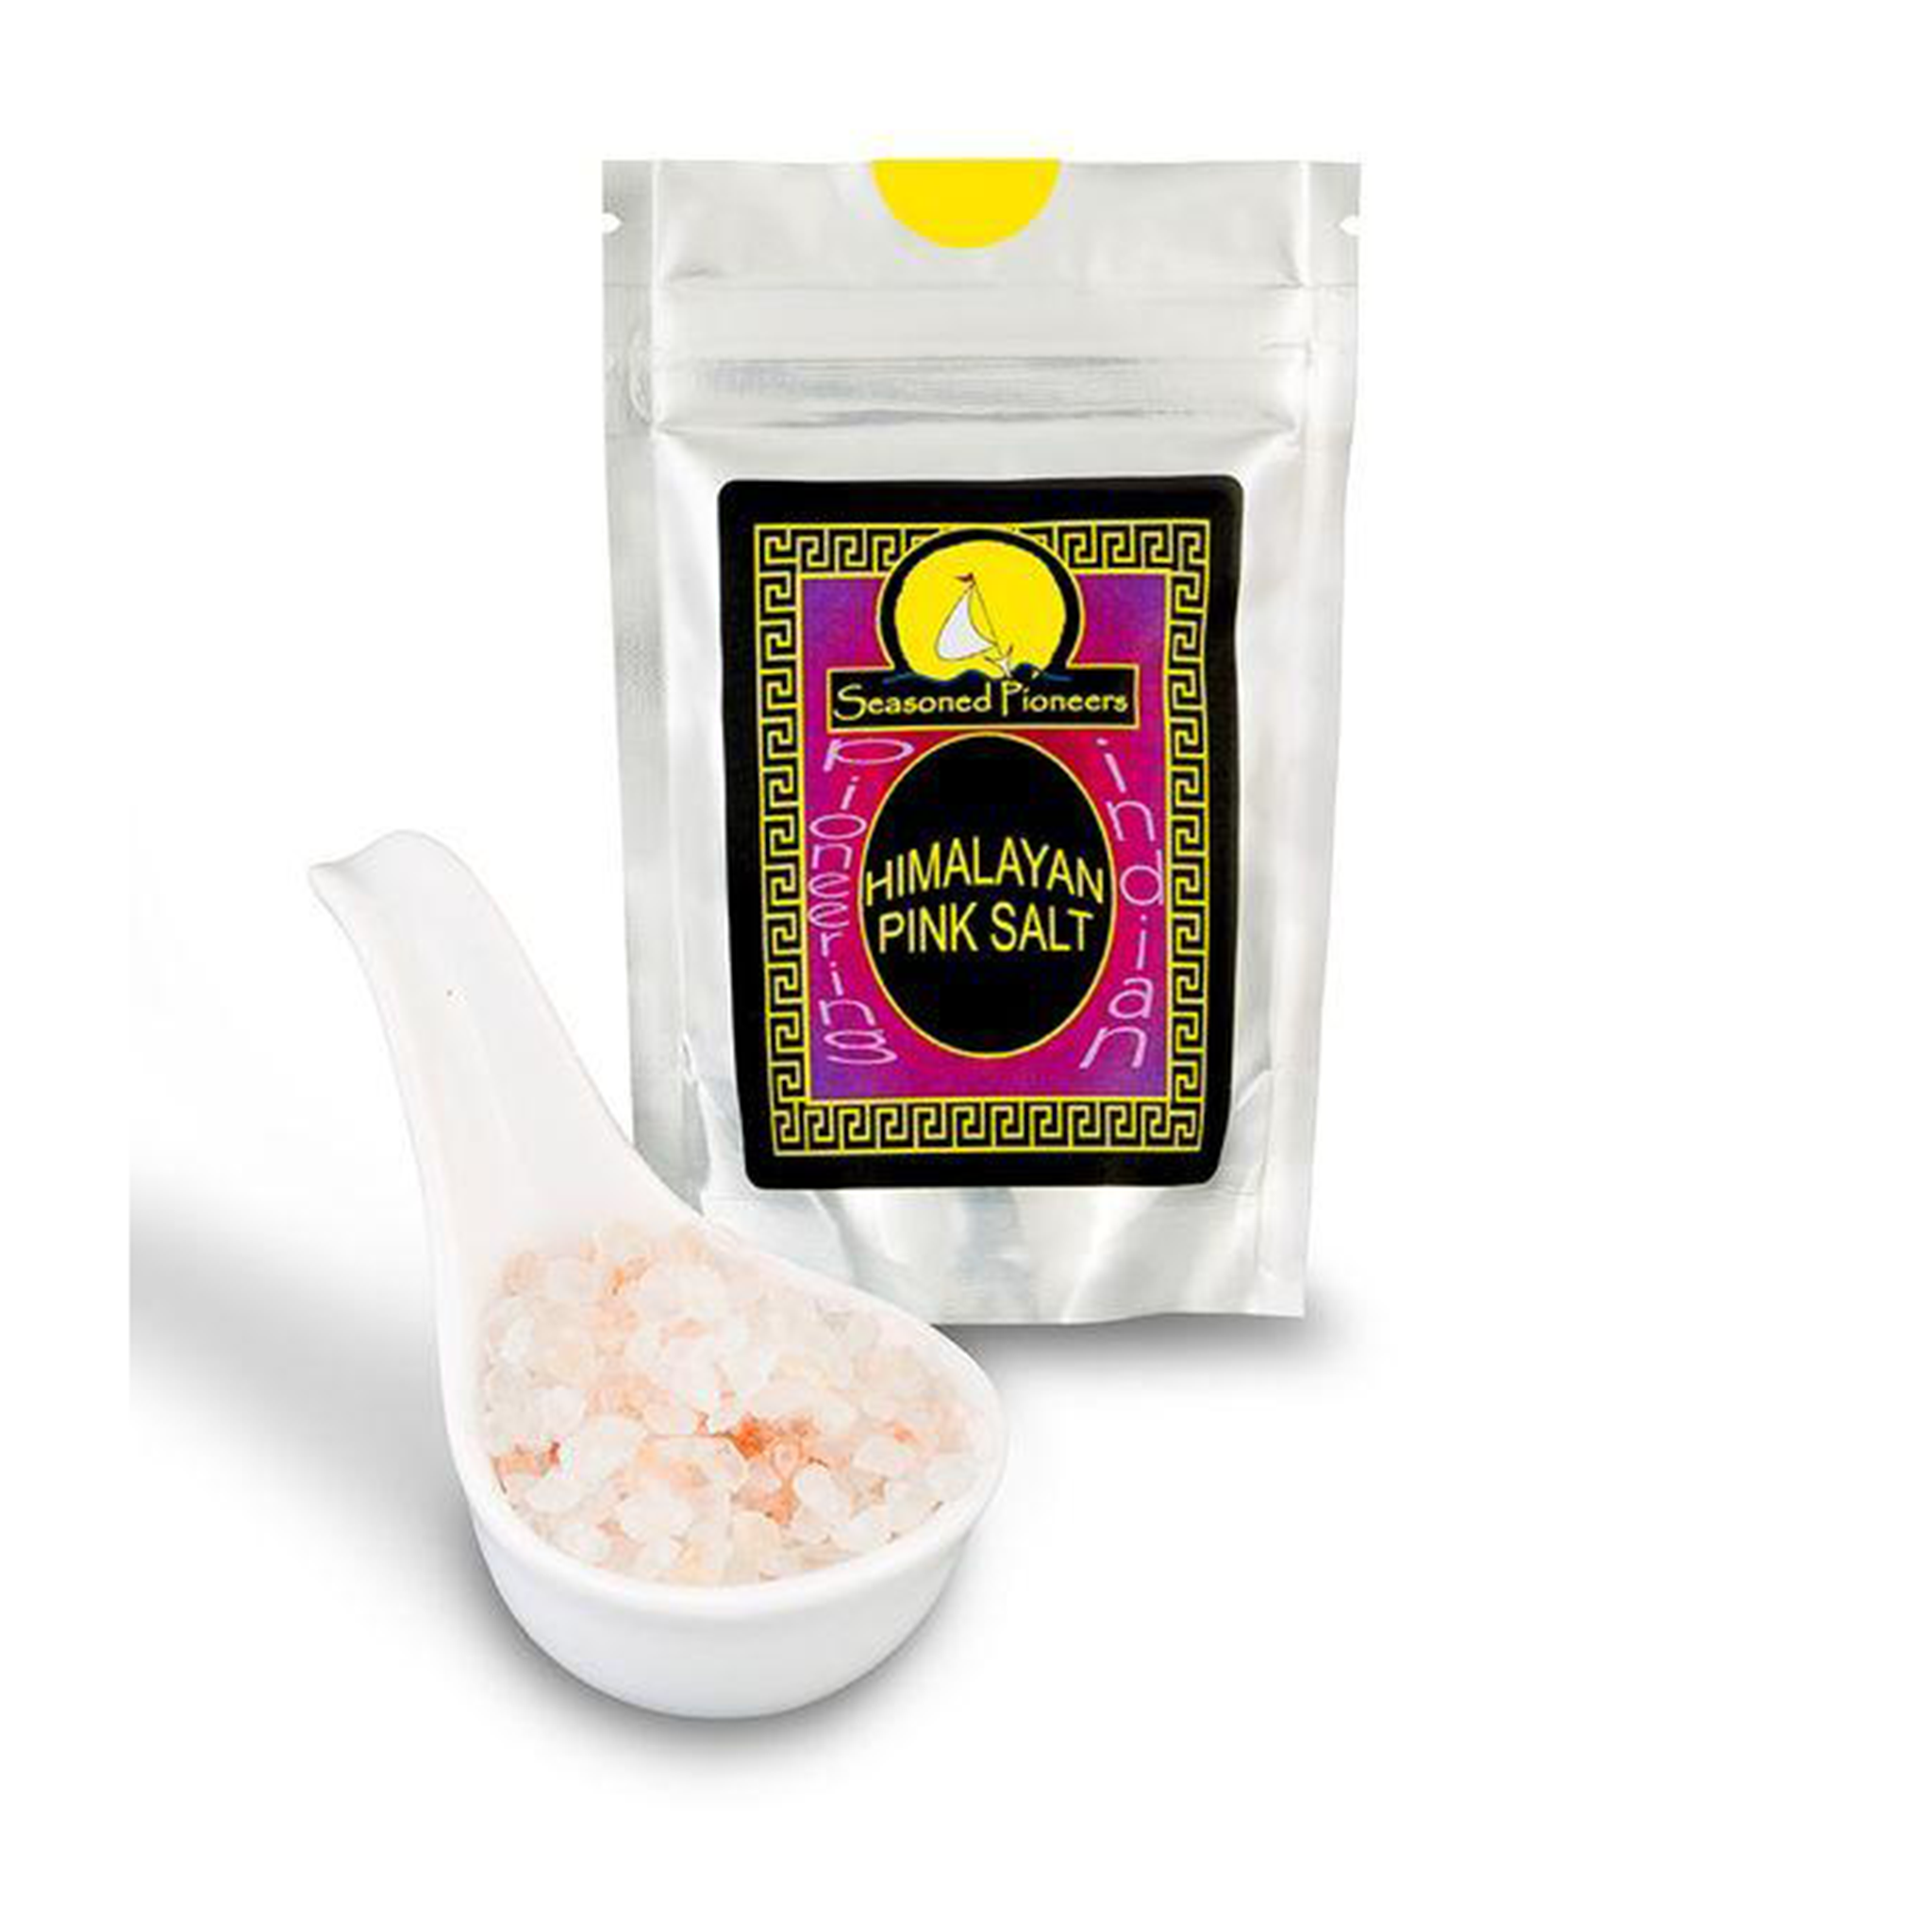 Himalayan Pink Salt 60g by Seasoned Pioneers